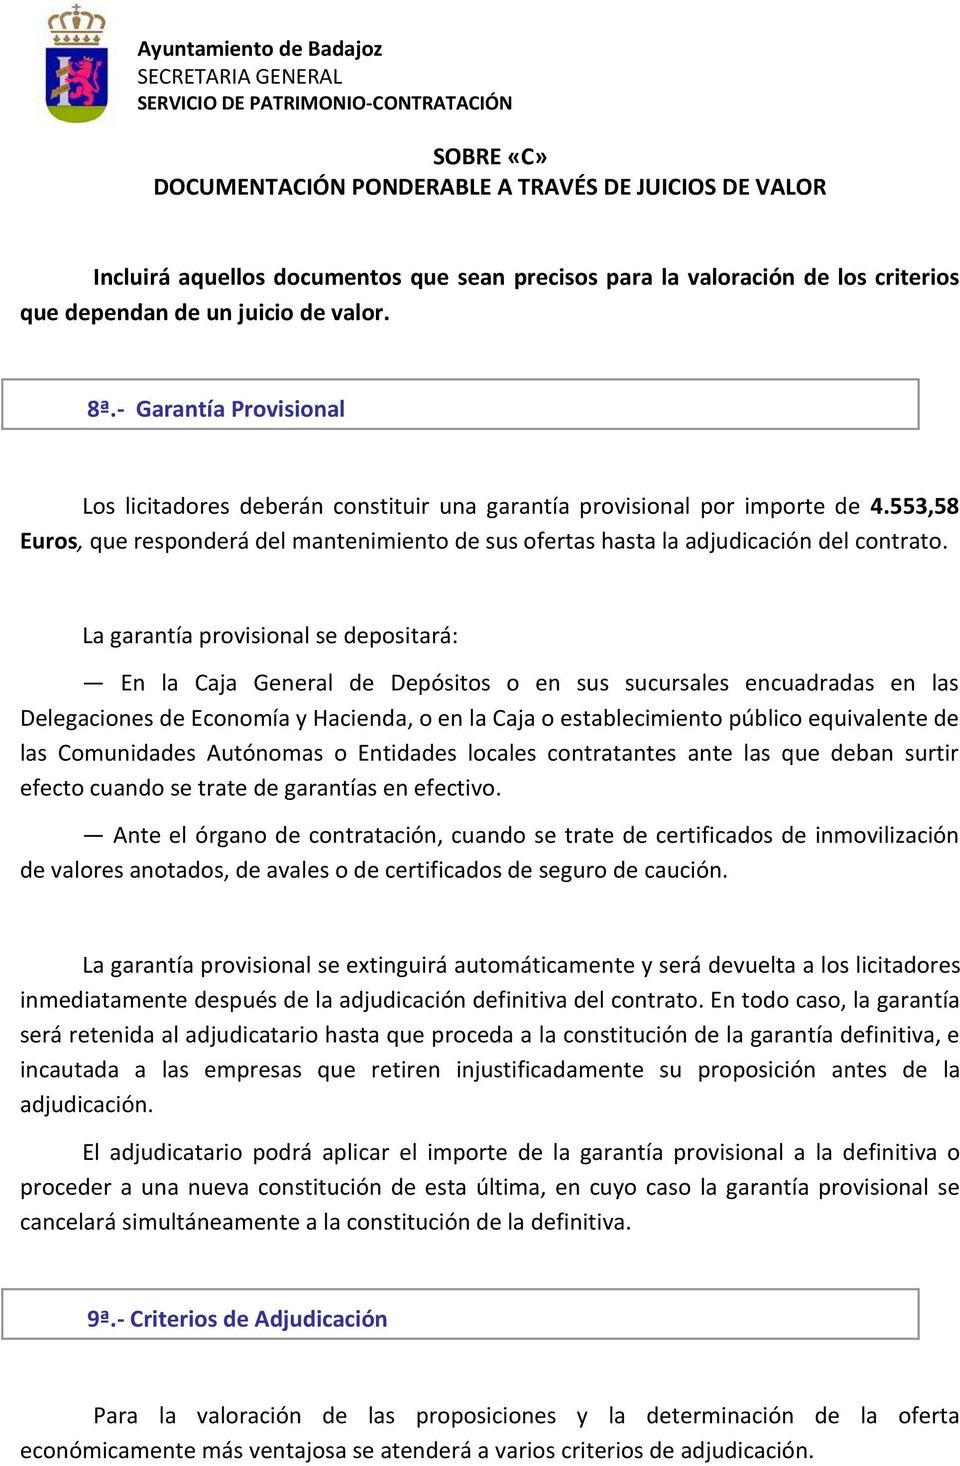 553,58 Euros, que responderá del mantenimiento de sus ofertas hasta la adjudicación del contrato.